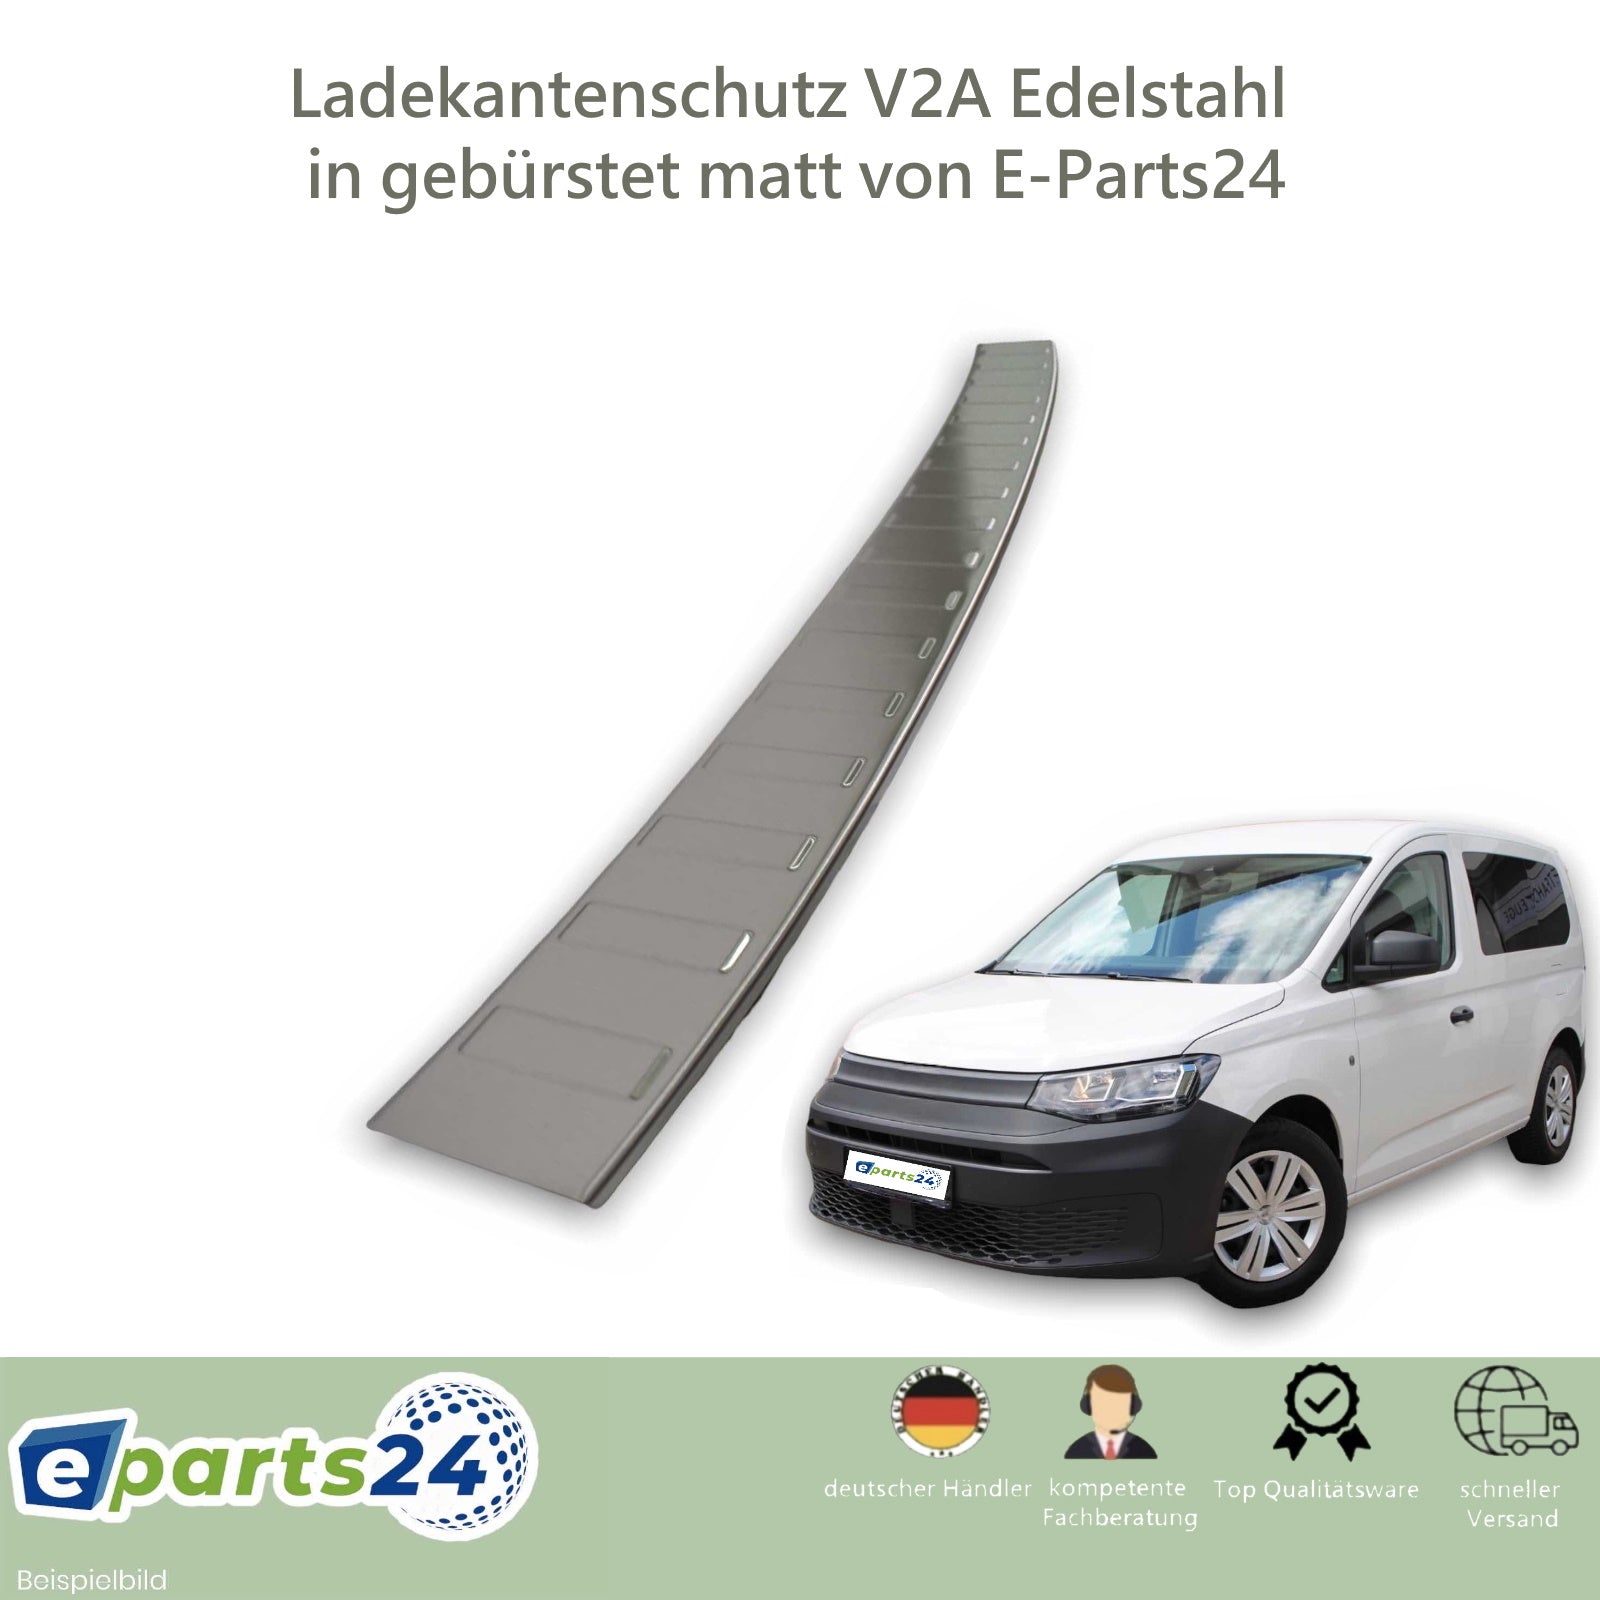 Ladekantenschutz Heckschutz VW Caddy mit Edelstahl E-Parts24 V 5 Abkantung für gebürstet 2020- ab